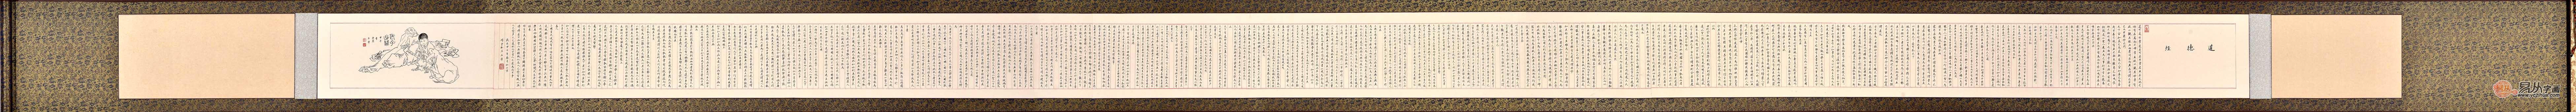 王宁长卷横幅小楷书法作品《道德经》